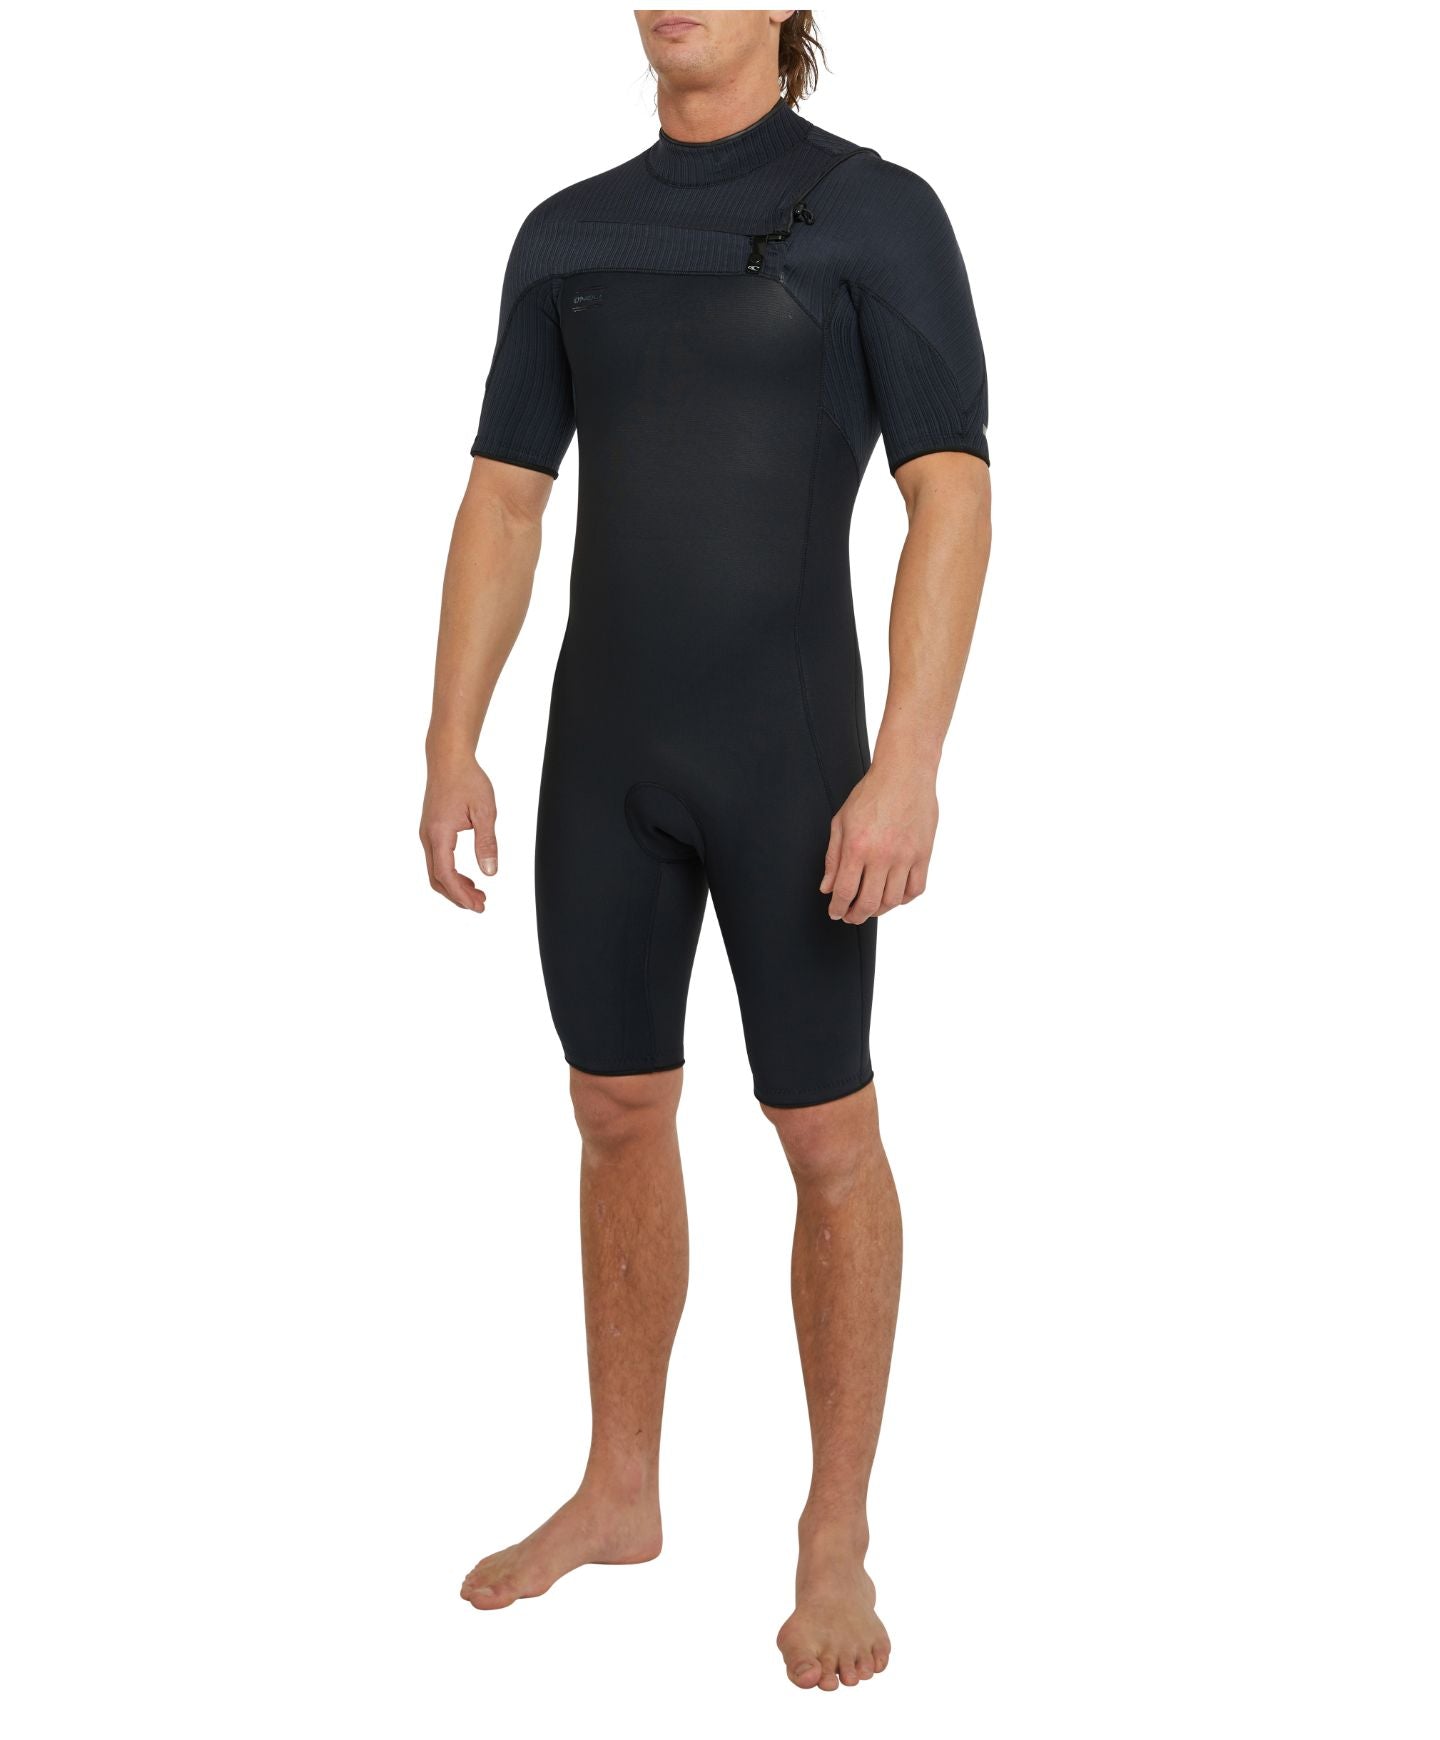 HyperFreak Short Sleeve Springsuit 2mm Chest Zip Wetsuit - Black